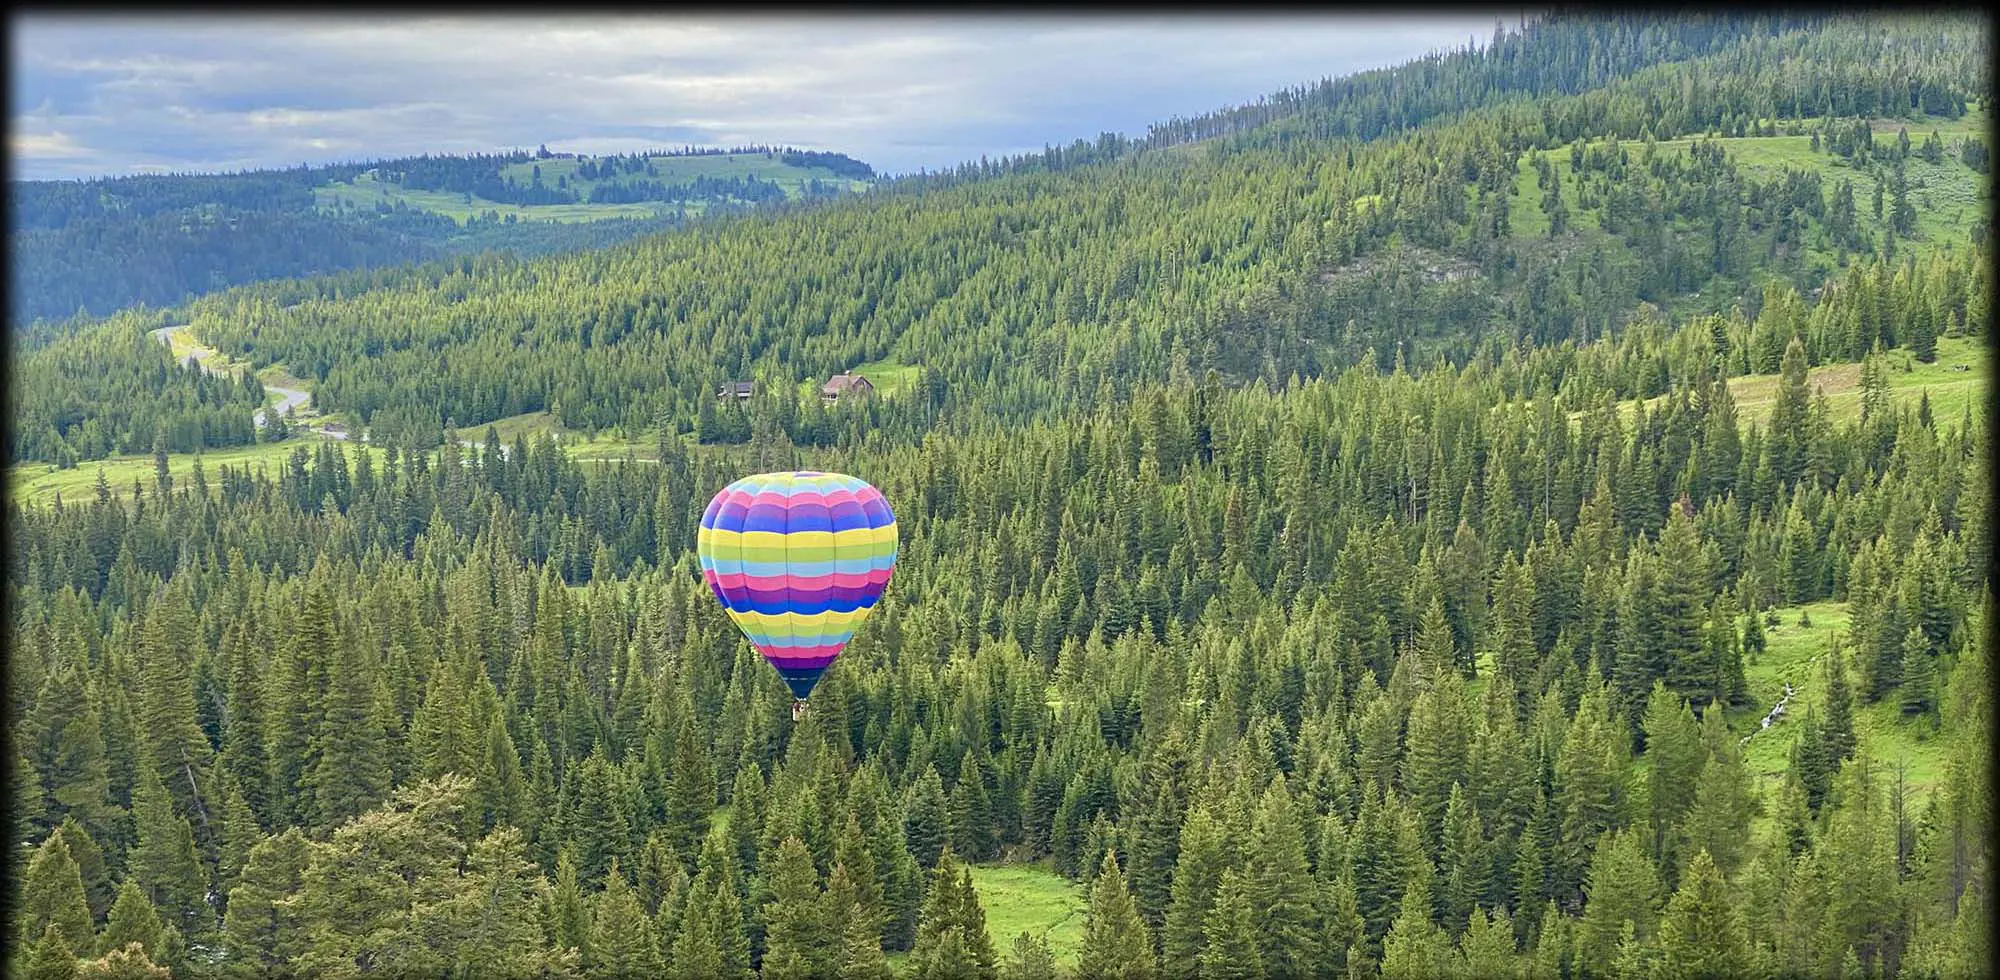 Mountain Views Hot Air Balloon Ride